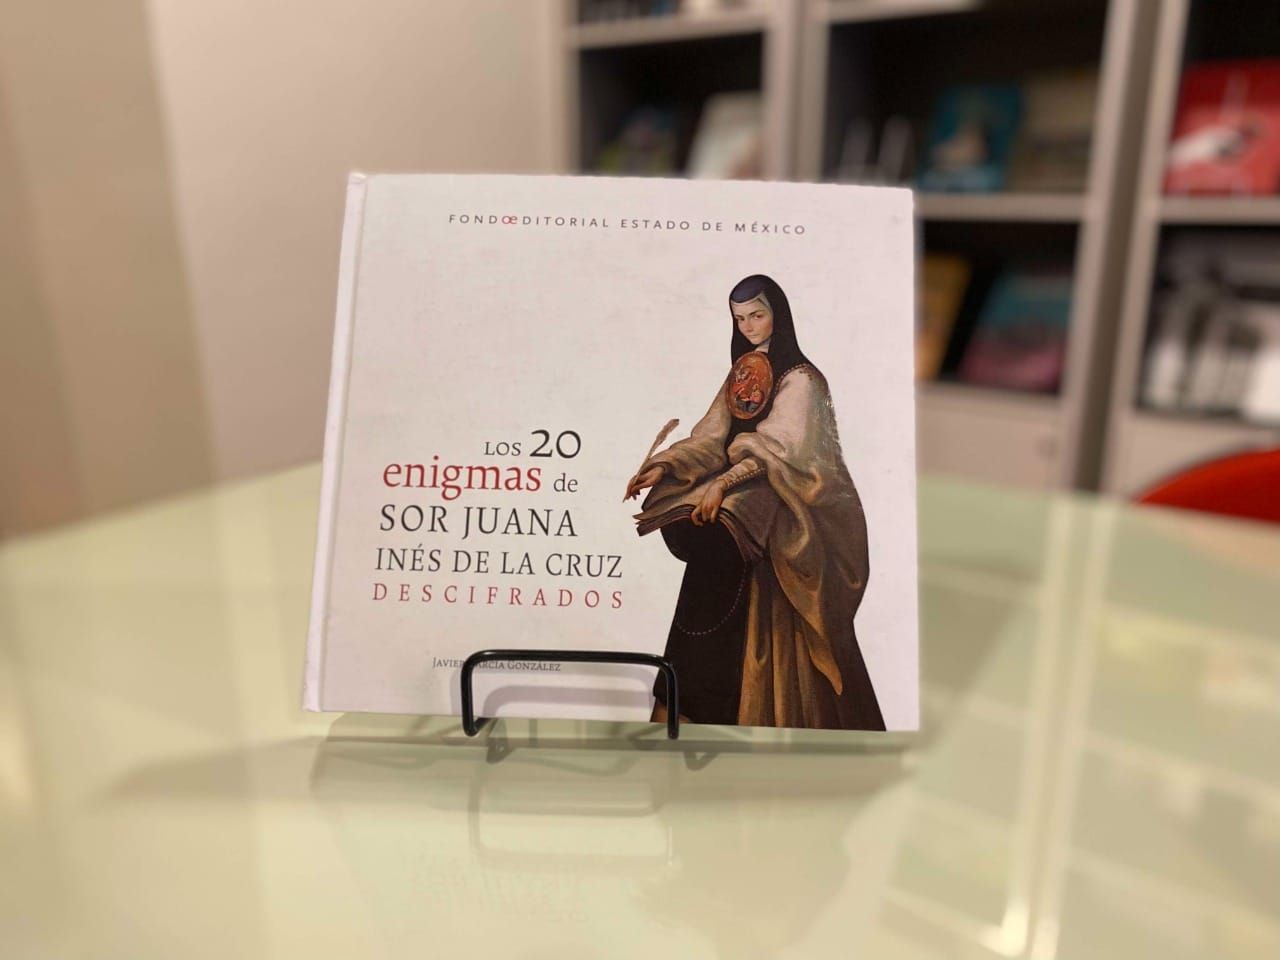 Celebran Cumpleaños de Sor Juana Inés
de la Cruz con Recomendaciones de Libros.
